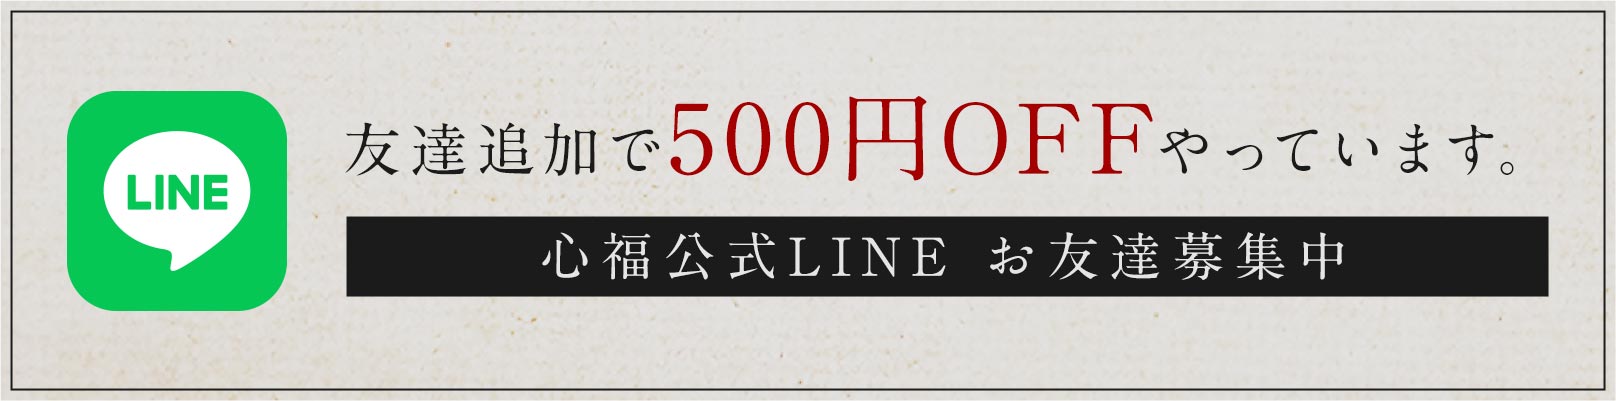 友達追加で500円OFFやっています。